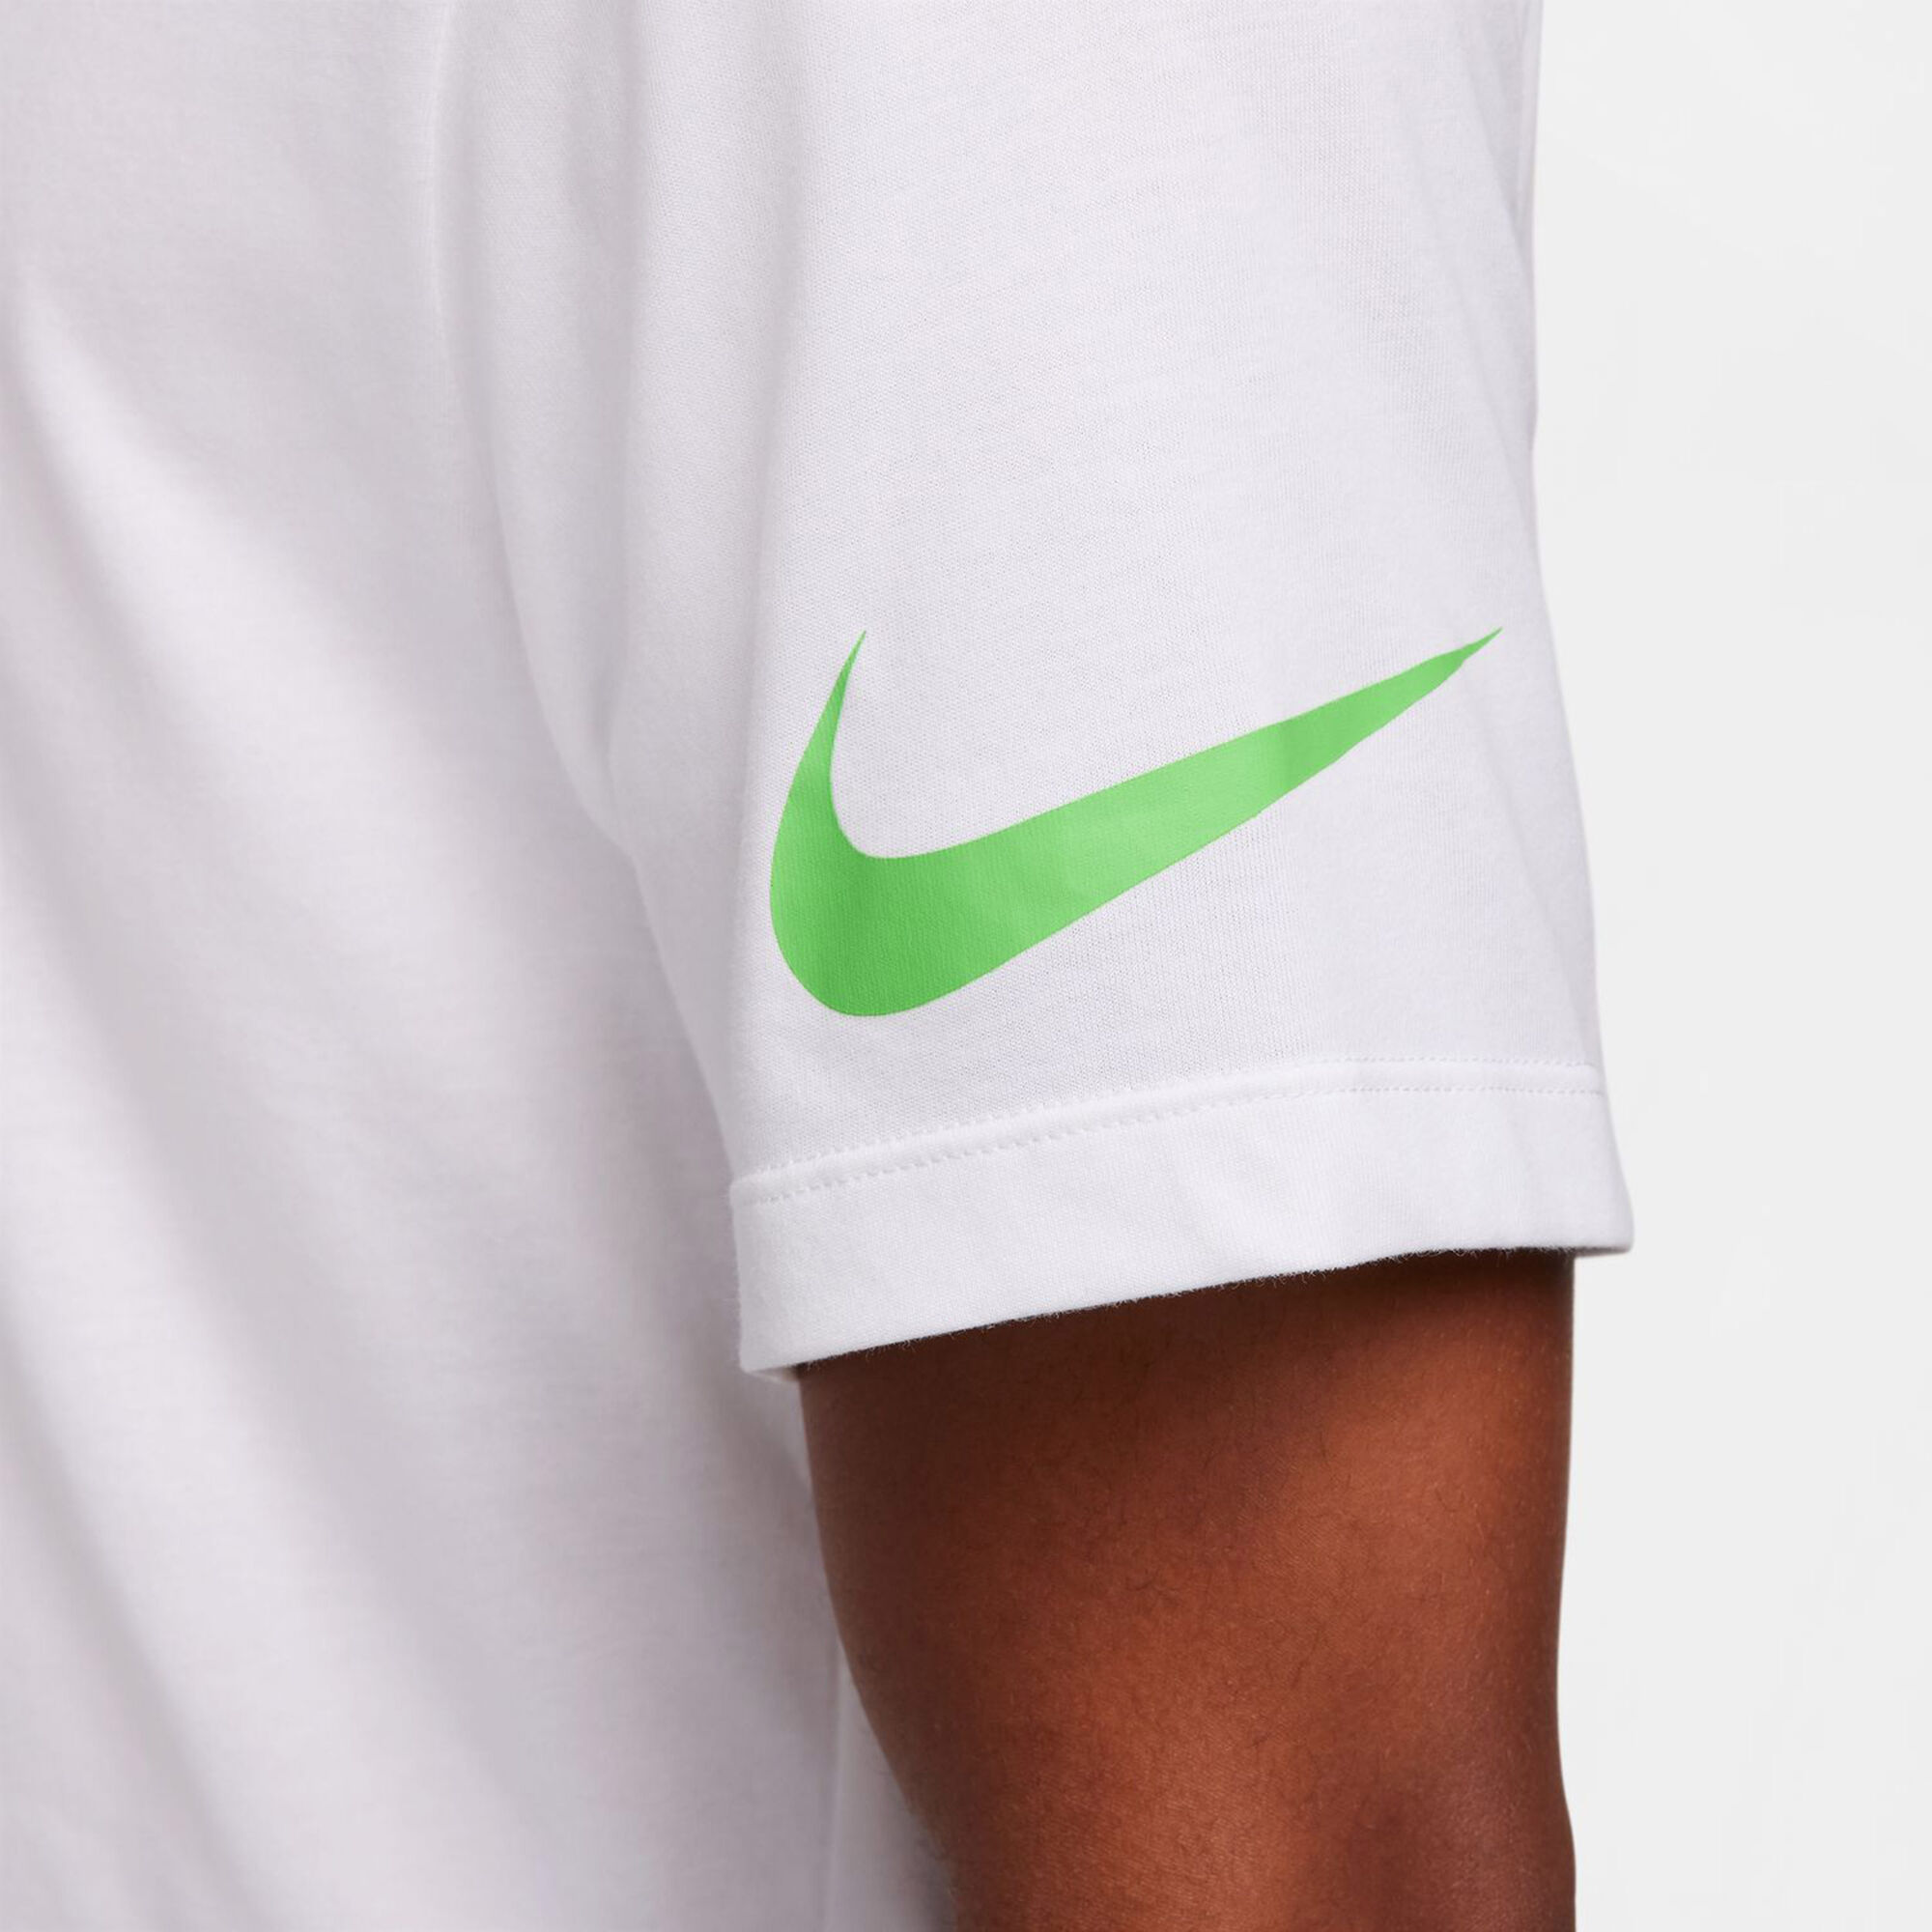 T-SHIRT COURT Camiseta de tenis - Hombre - Tienda en línea Diadora US